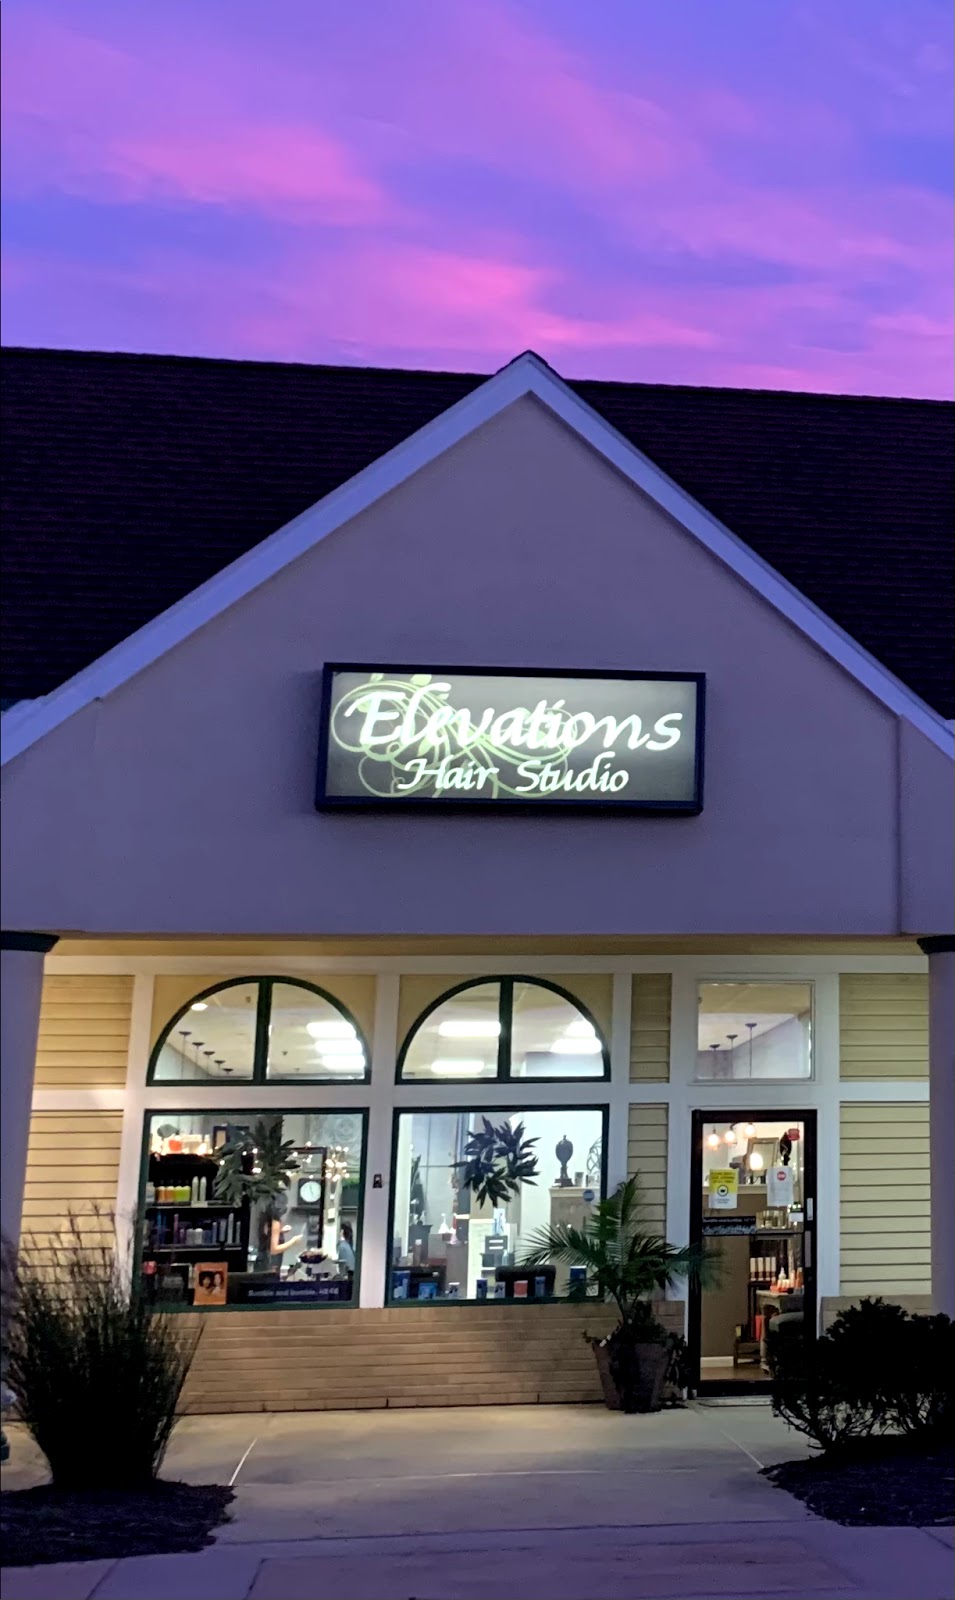 Elevations Hair Studio | Inside Aire Salon Suites, 515 Brick Blvd Suite 201, Brick Township, NJ 08723 | Phone: (732) 255-4400